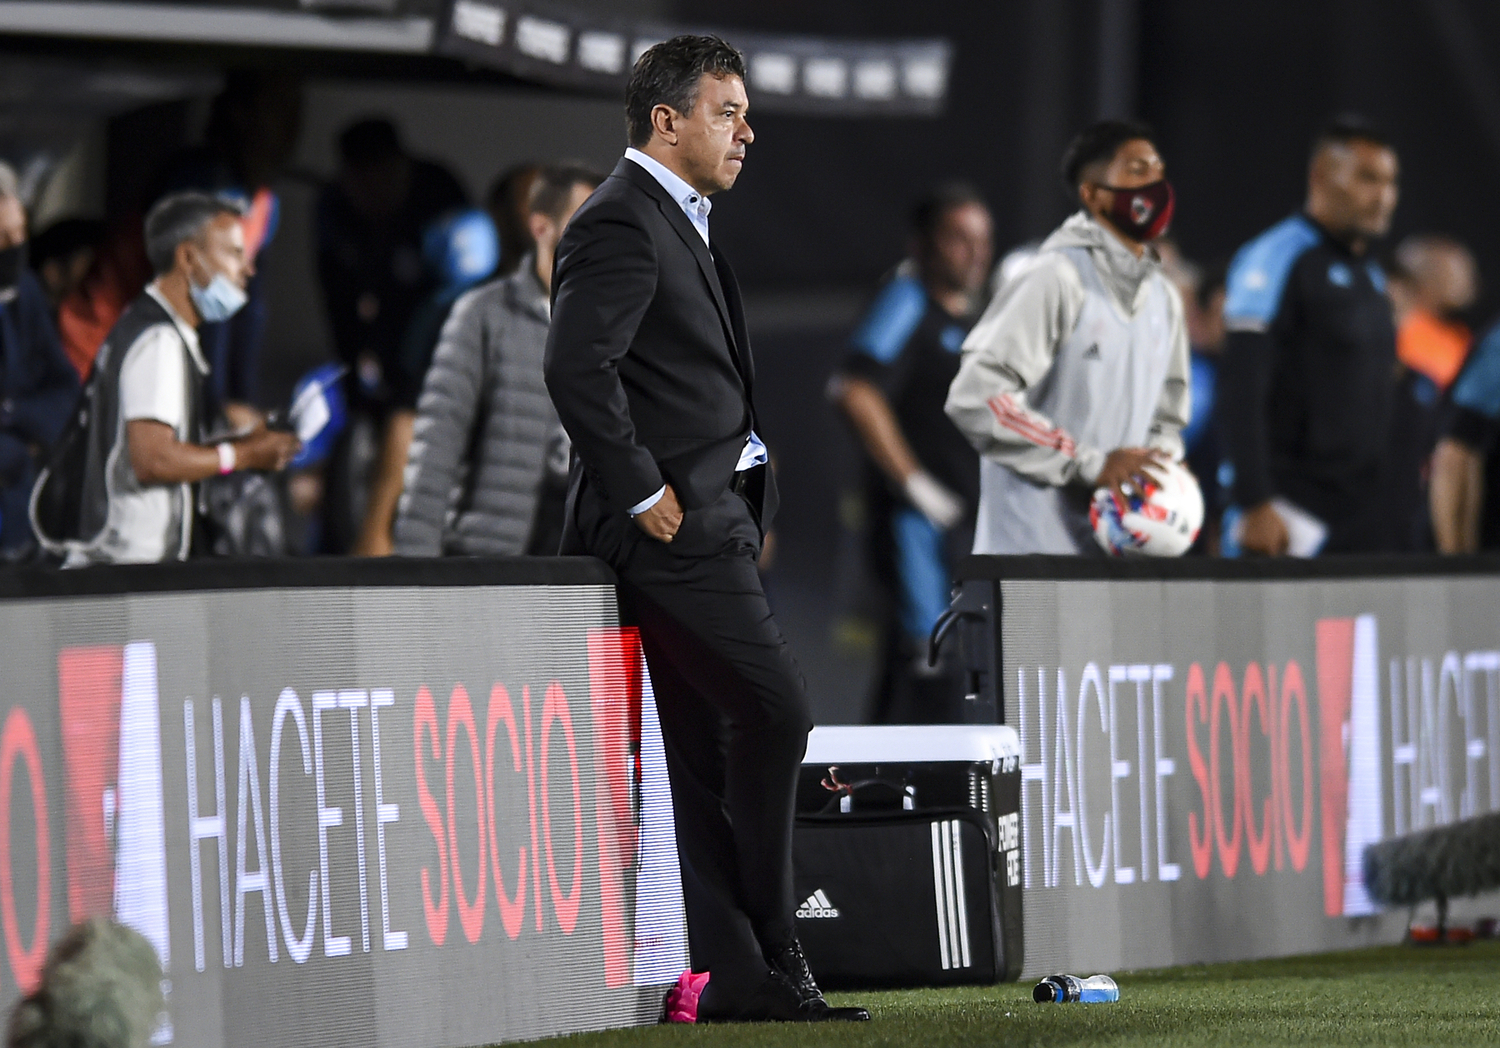 รายงาน: เป้าหมายผู้จัดการทีม PSG จะอยู่ที่ปารีสสำหรับรอบชิงชนะเลิศแชมเปี้ยนส์ลีก